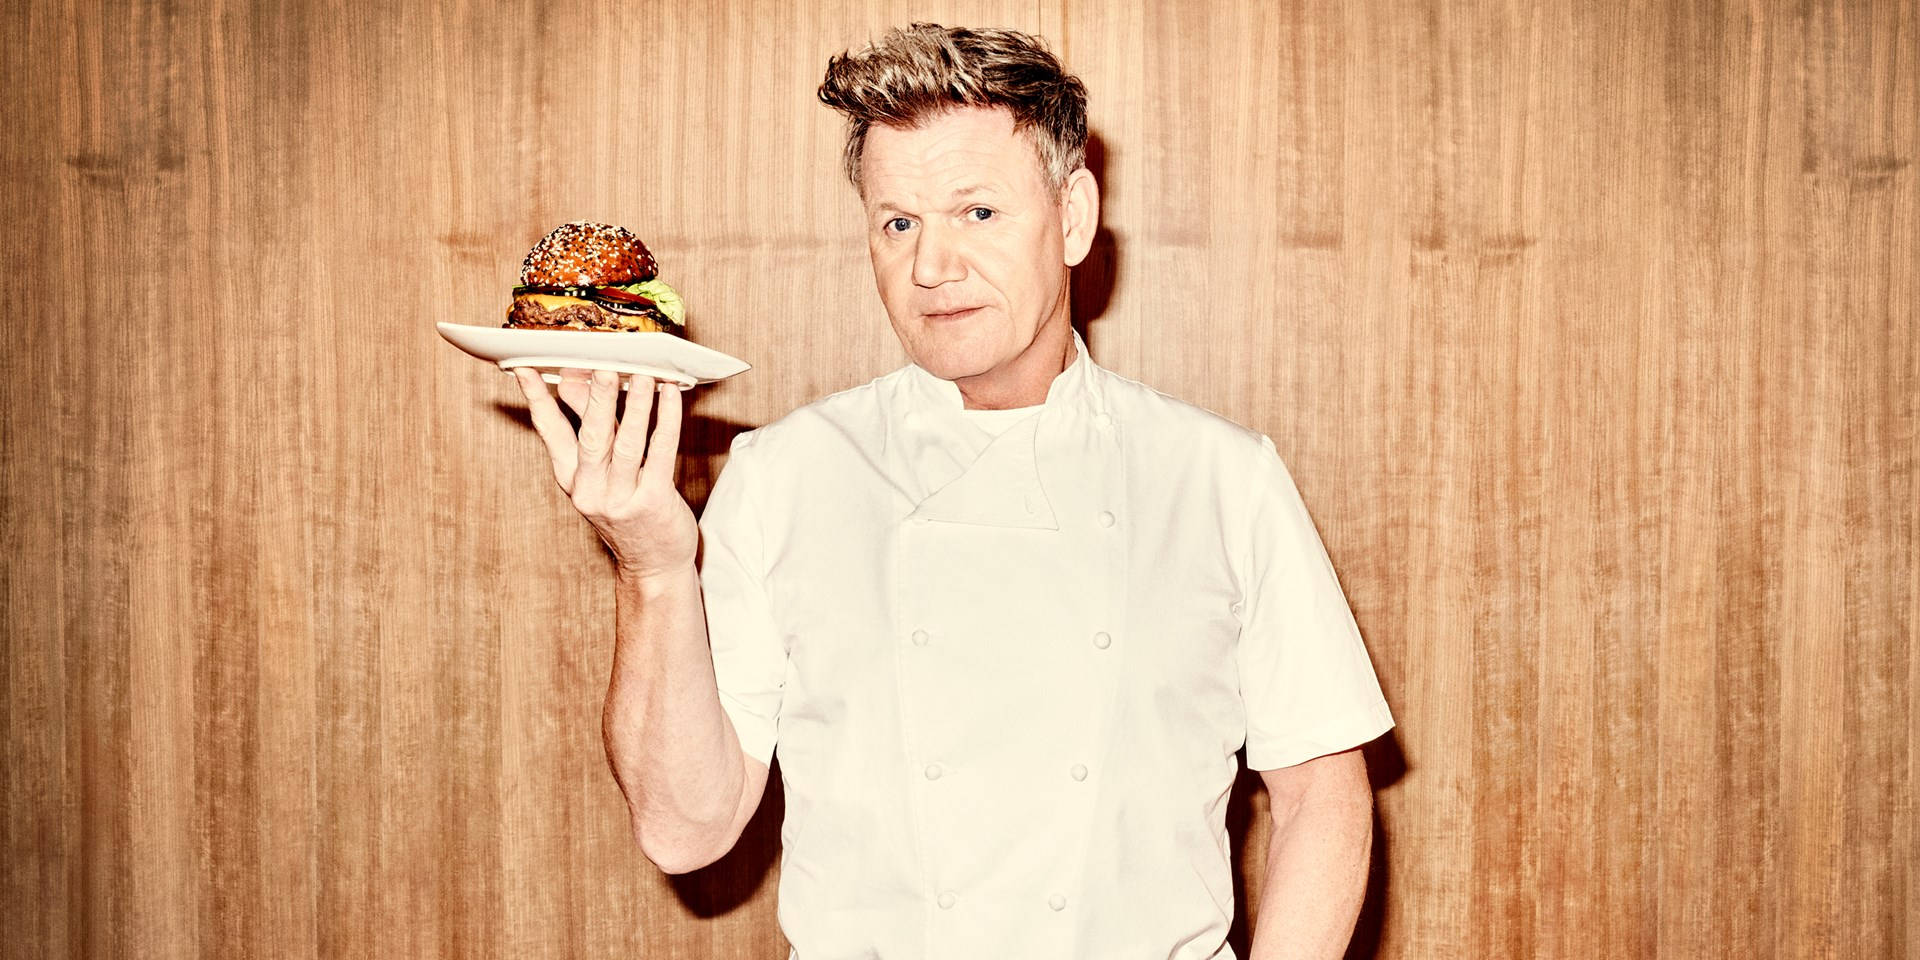 Gordon Ramsay Celebrity Chef Background